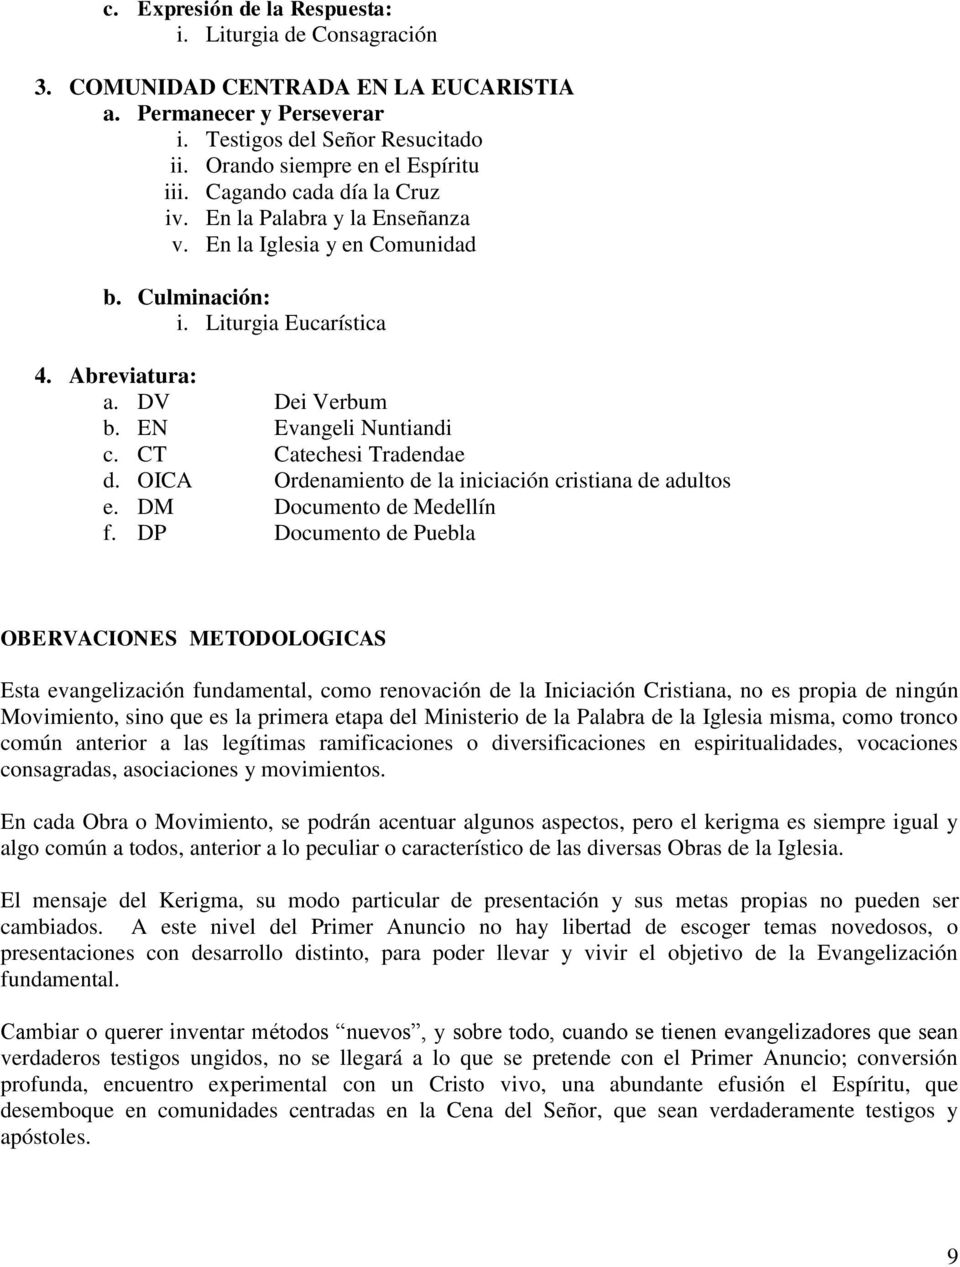 CT Catechesi Tradendae d. OICA Ordenamiento de la iniciación cristiana de adultos e. DM Documento de Medellín f.